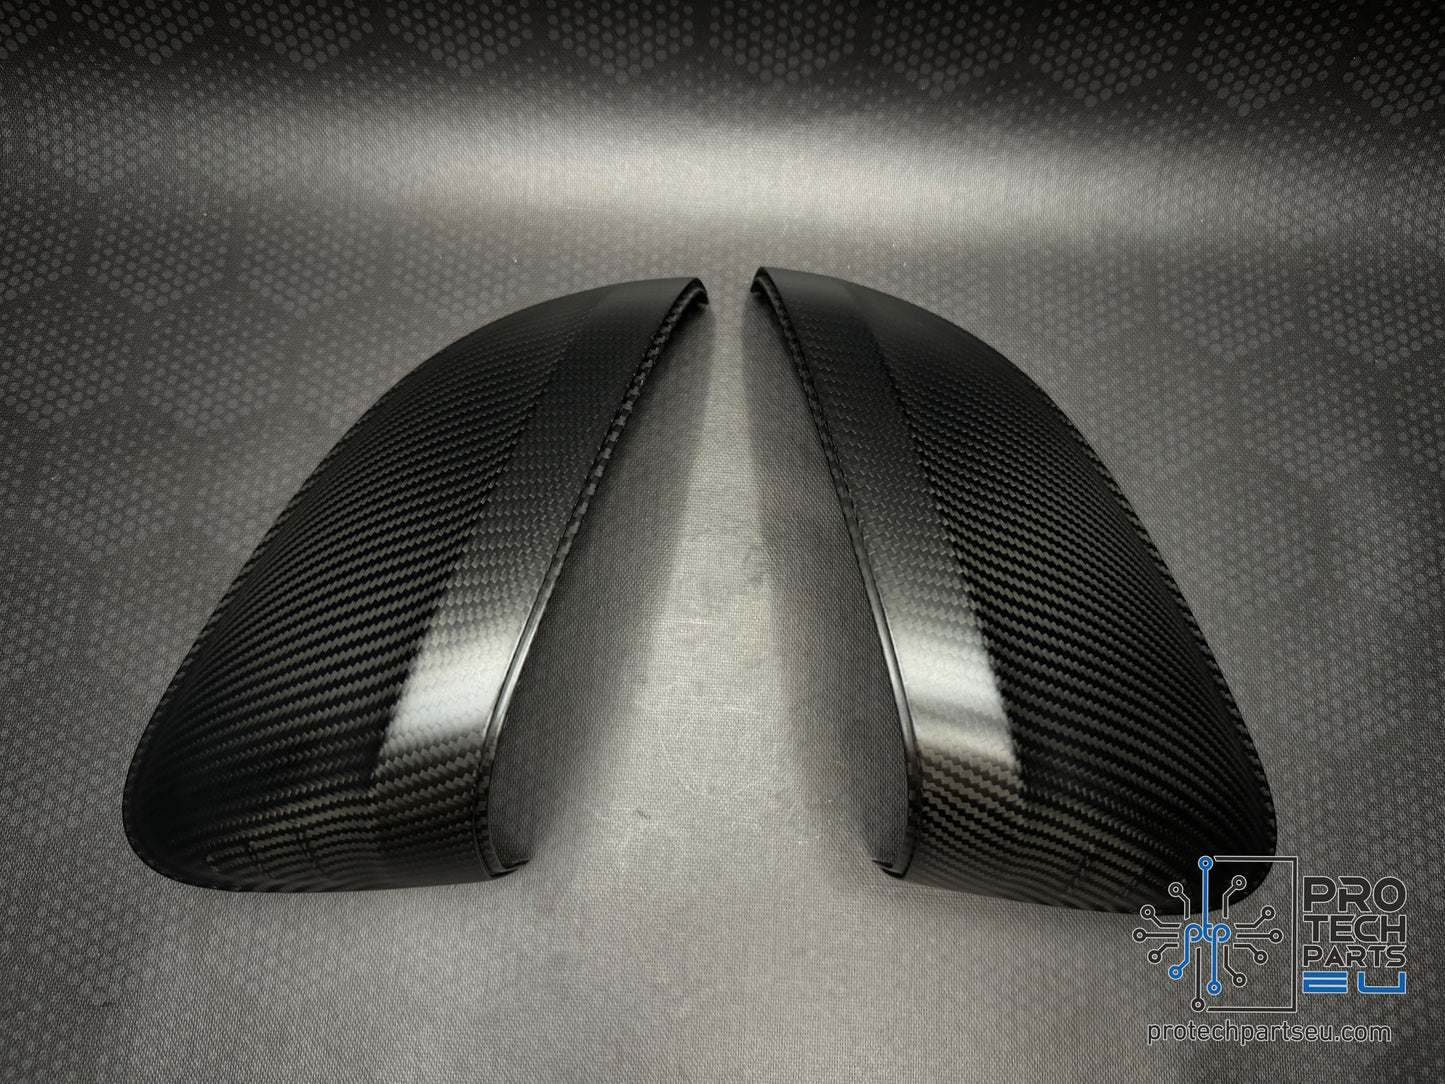 
                  
                    Genuine AUDI A4,A5,RS4,RS5 carbon fiber mirror cover caps set matte finish
                  
                